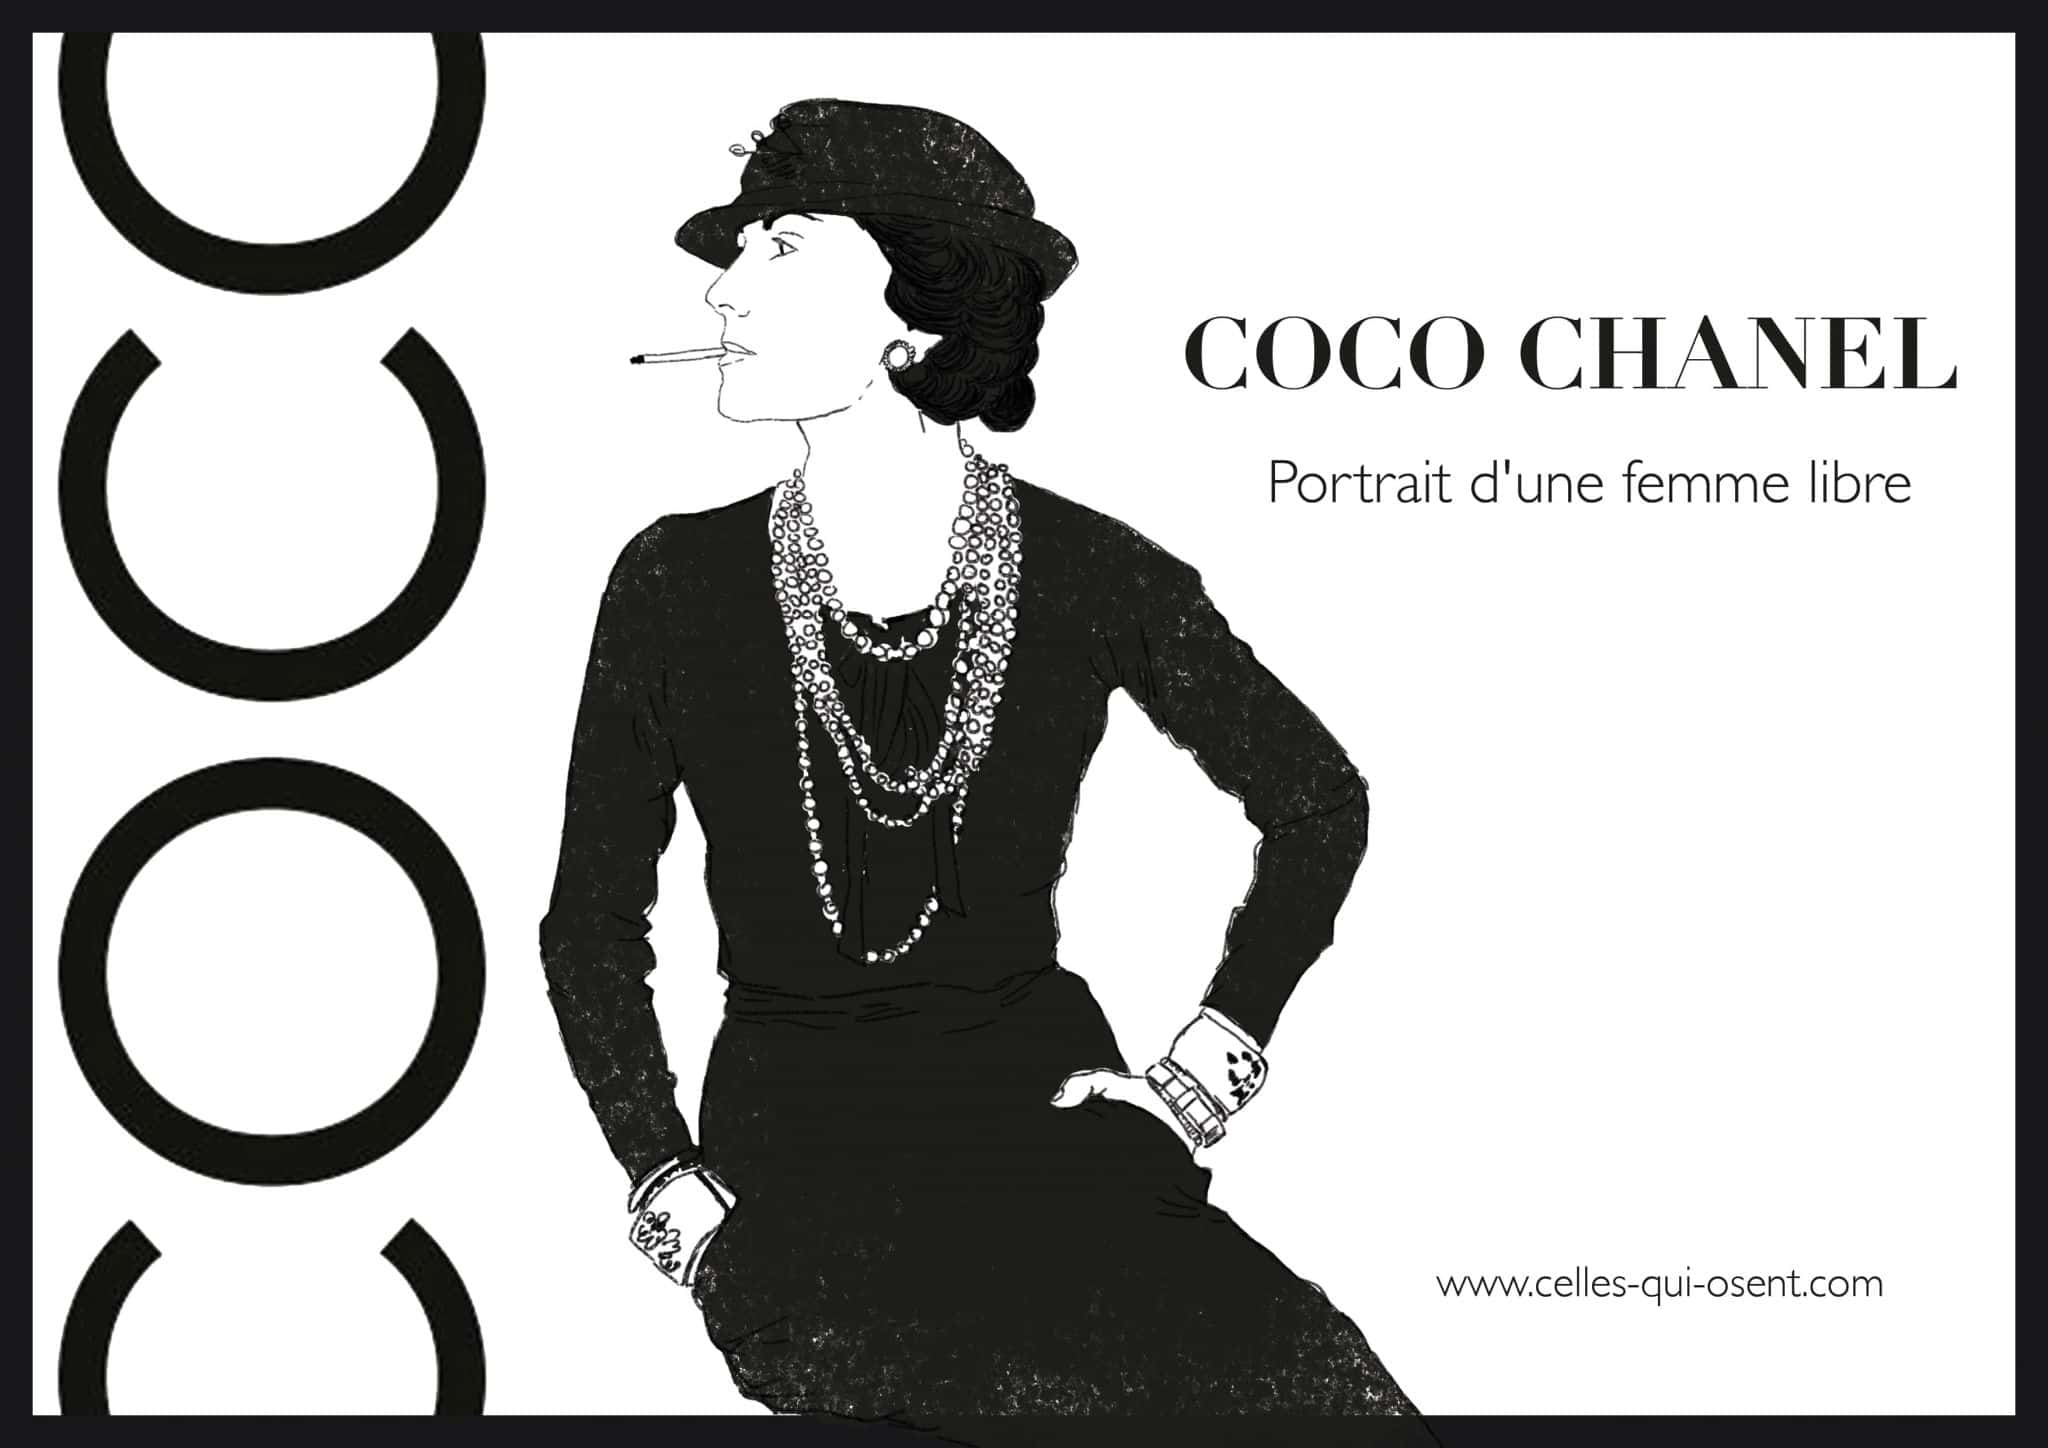 Coco Chanel, portrait d'une femme libre - Celles qui osent